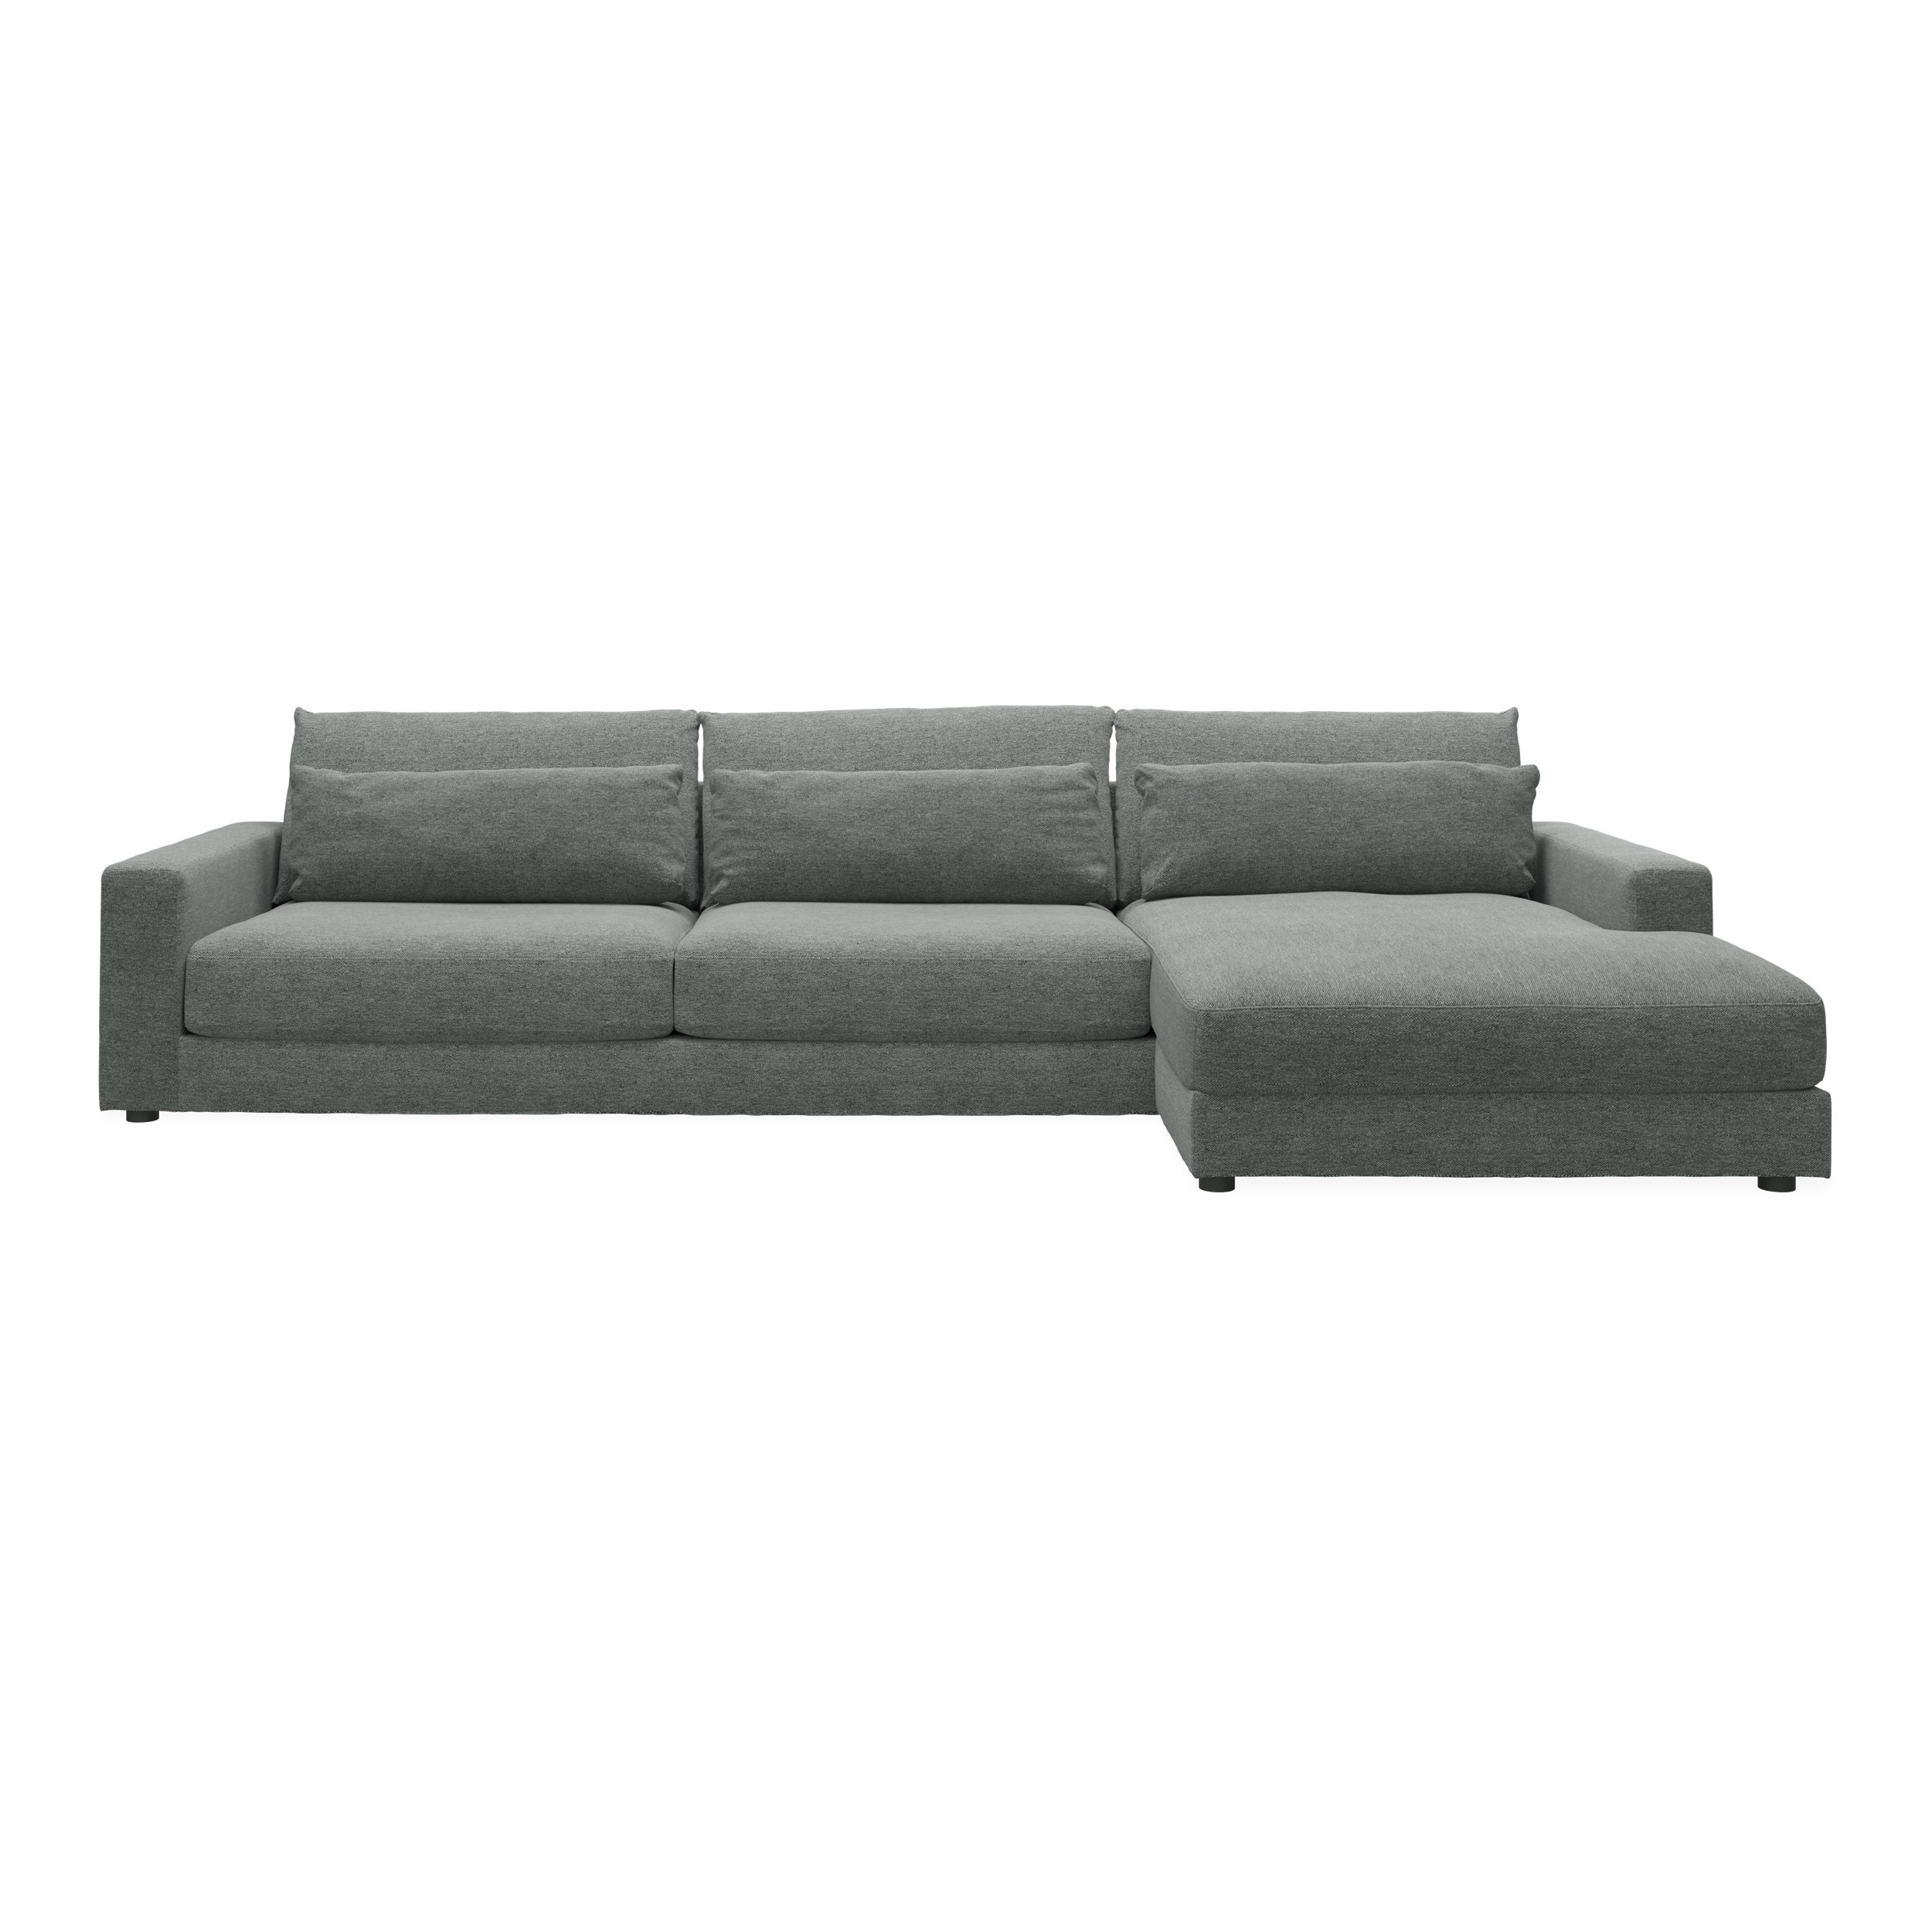 Halmstad högervänd soffa med schäslong - Skyland 45 antracitgrå tyg och ben i svart plast